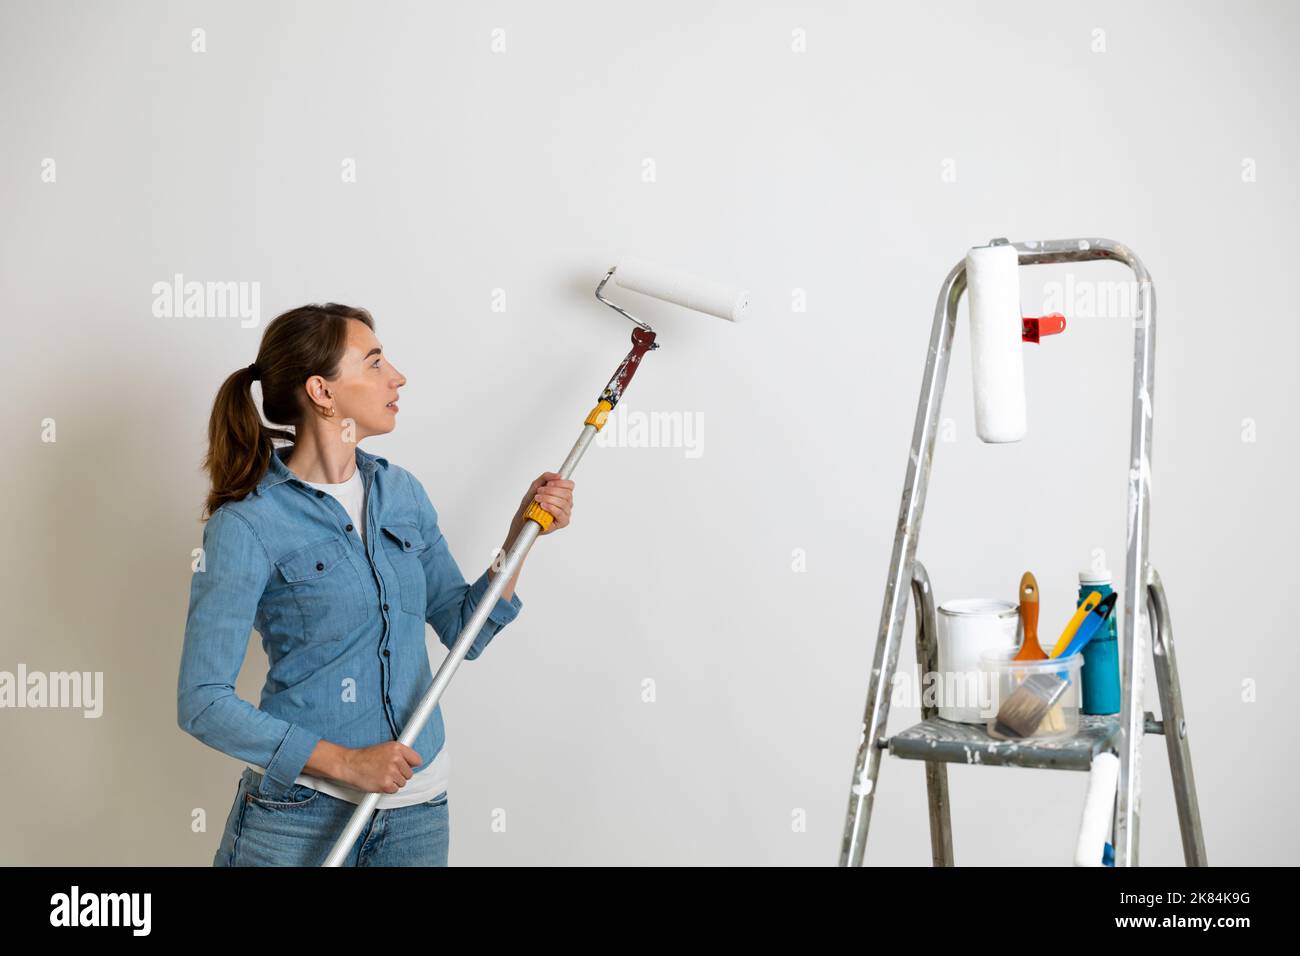 Femmes tenant un rouleau de peinture pour colorer les murs, échelle avec des pinceaux et des outils. Concept d'amélioration de la maison. Banque D'Images